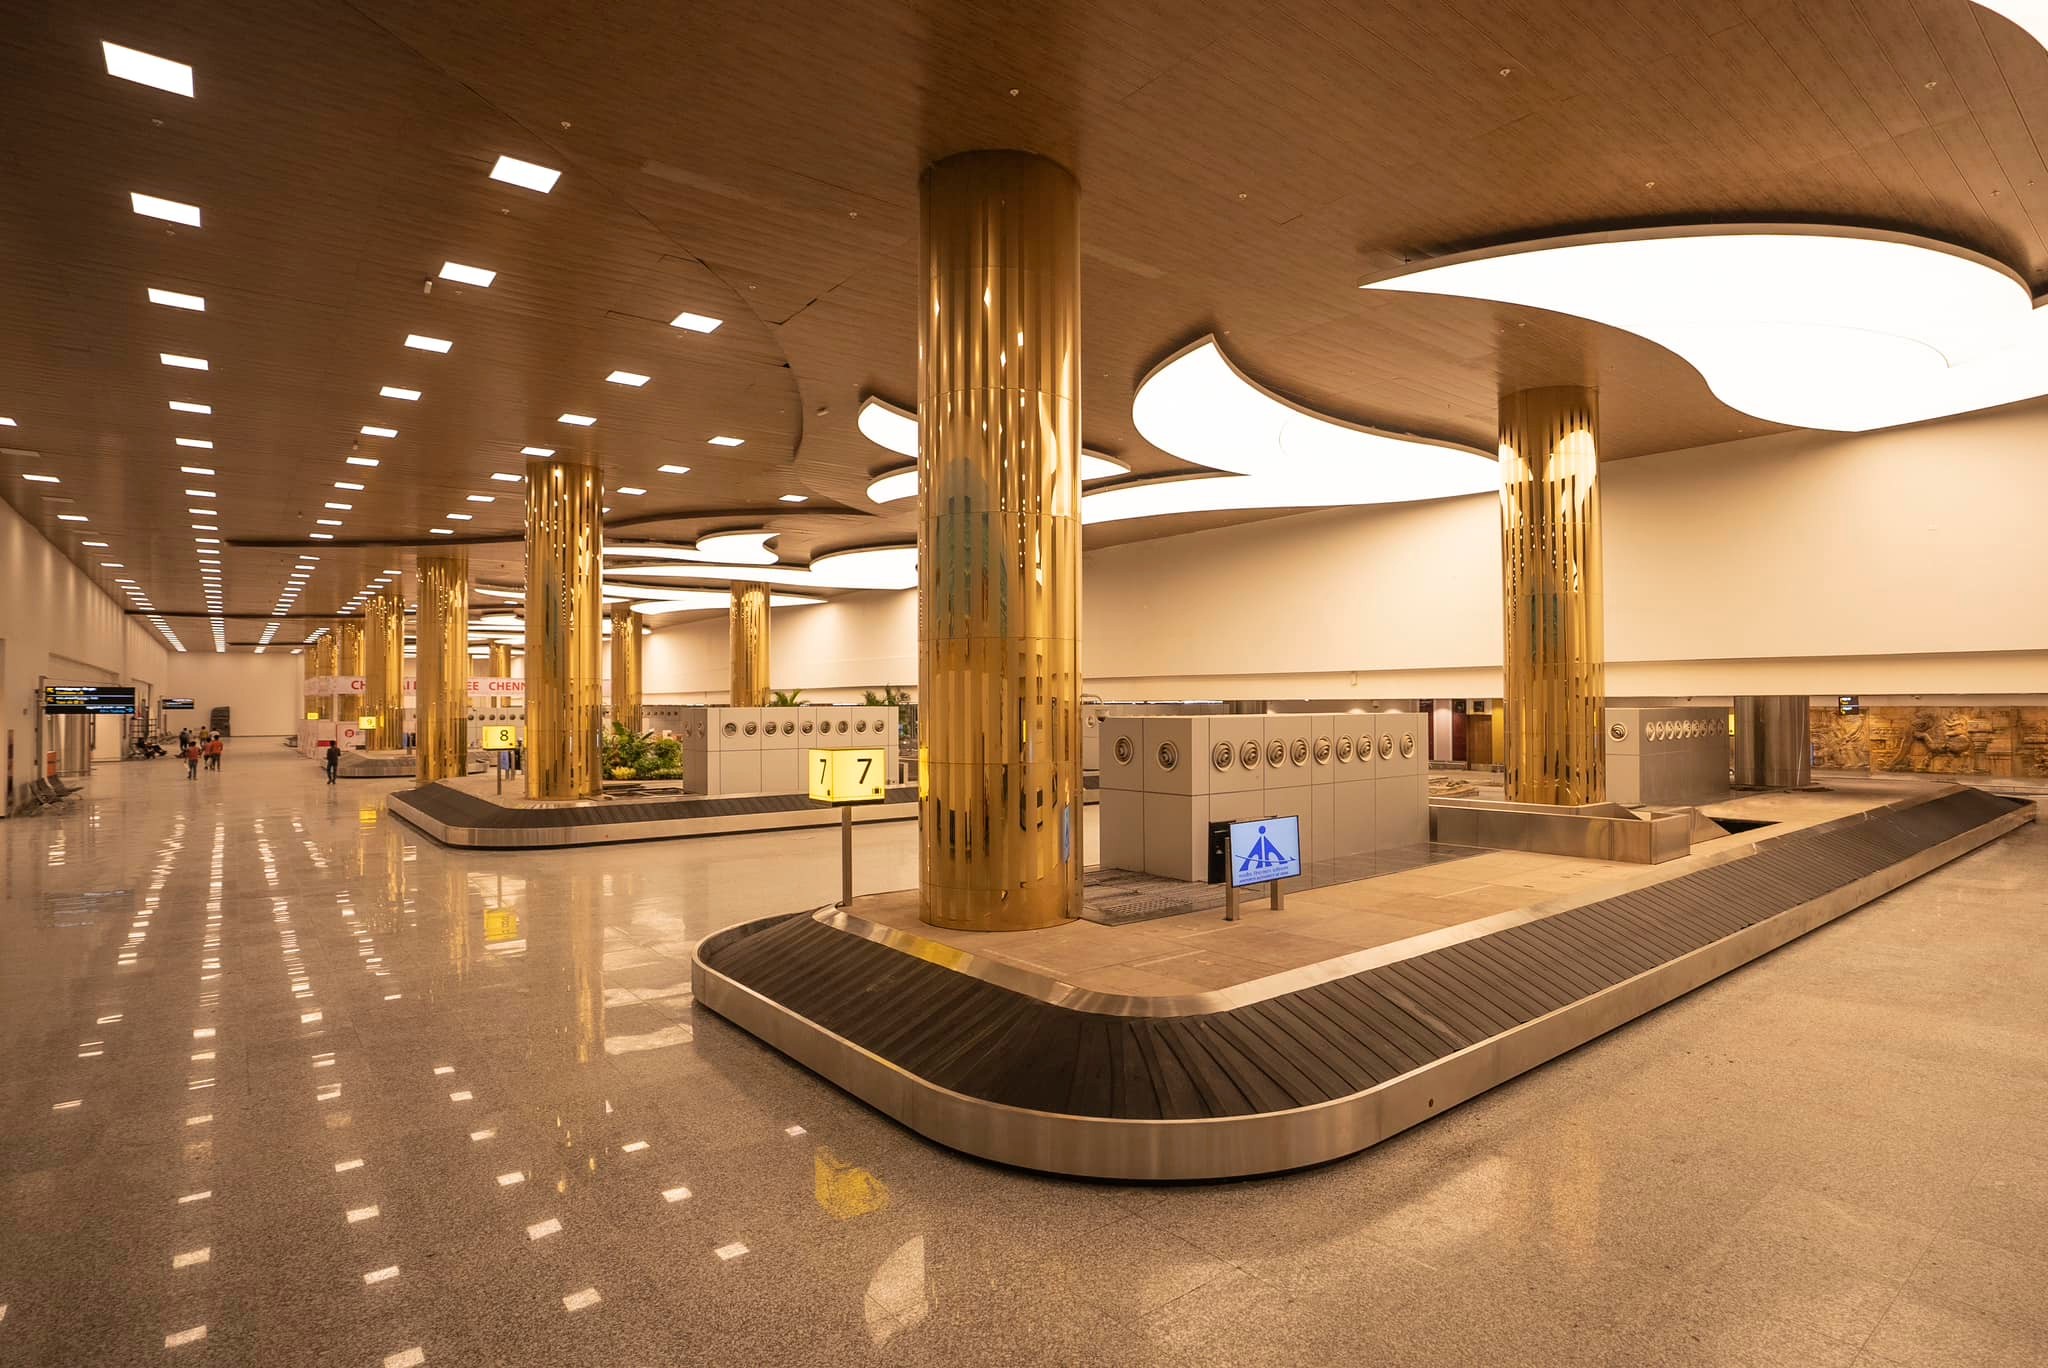 New Terminal Building at Chennai Airport